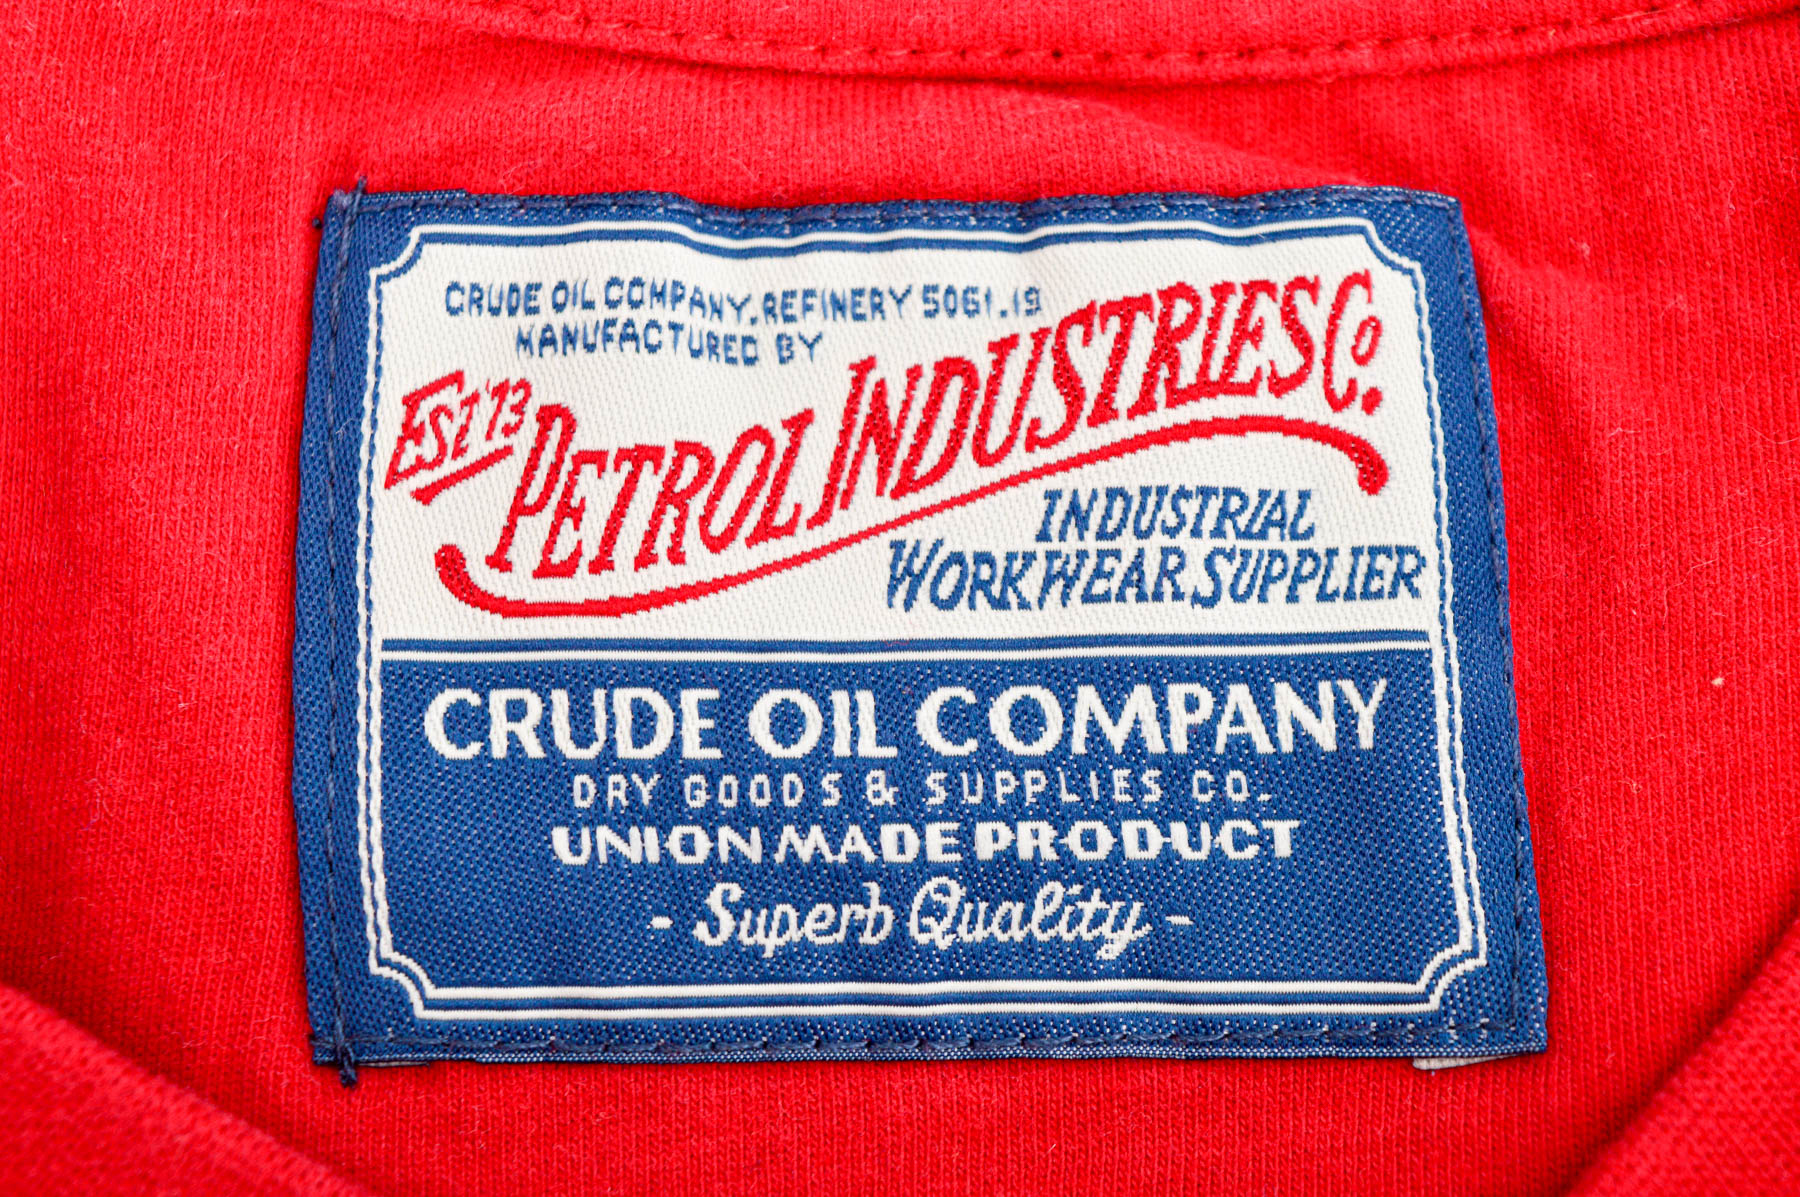 Męska koszulka - Petrol Industries Co - 2